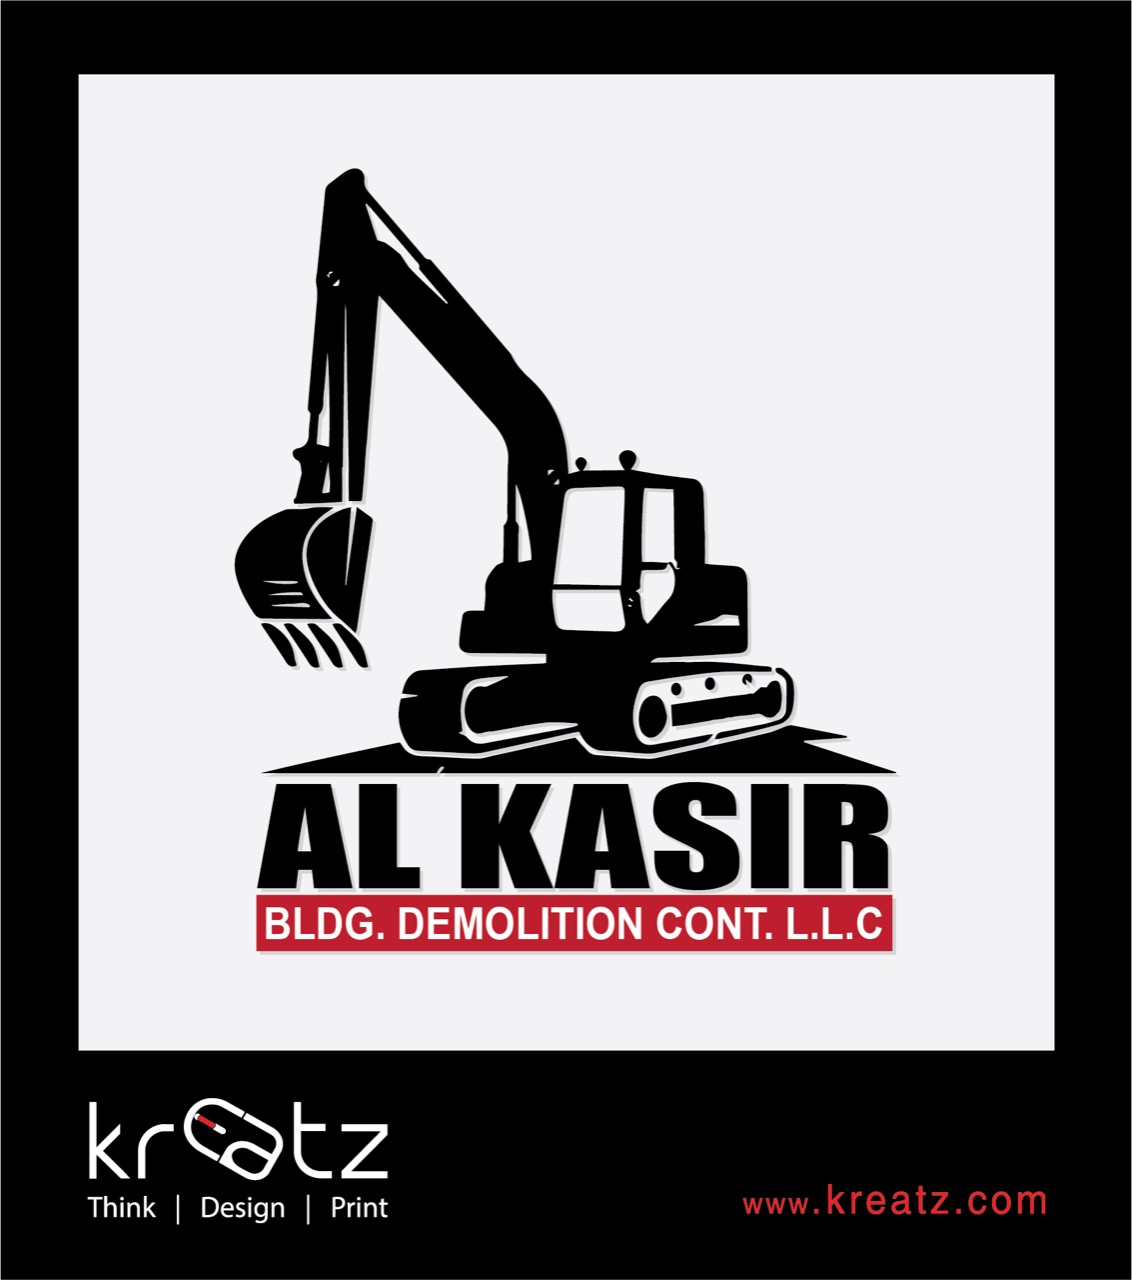 Alkasir bldg demolition cont LLC